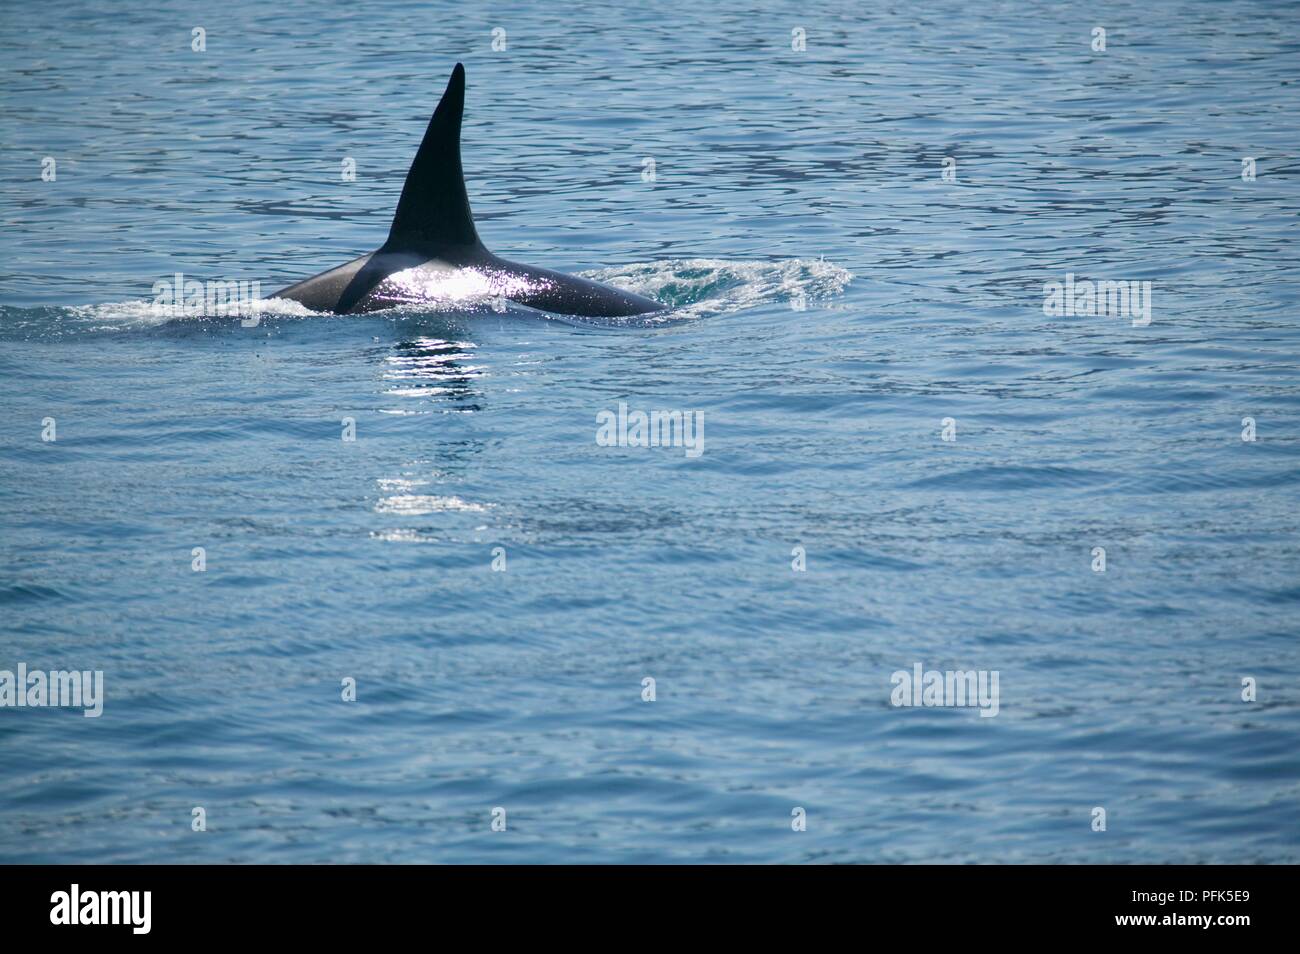 Stati Uniti d'America, Alaska, pinna dorsale della balena killer (Orcinus orca) affiorante dall'acqua Foto Stock